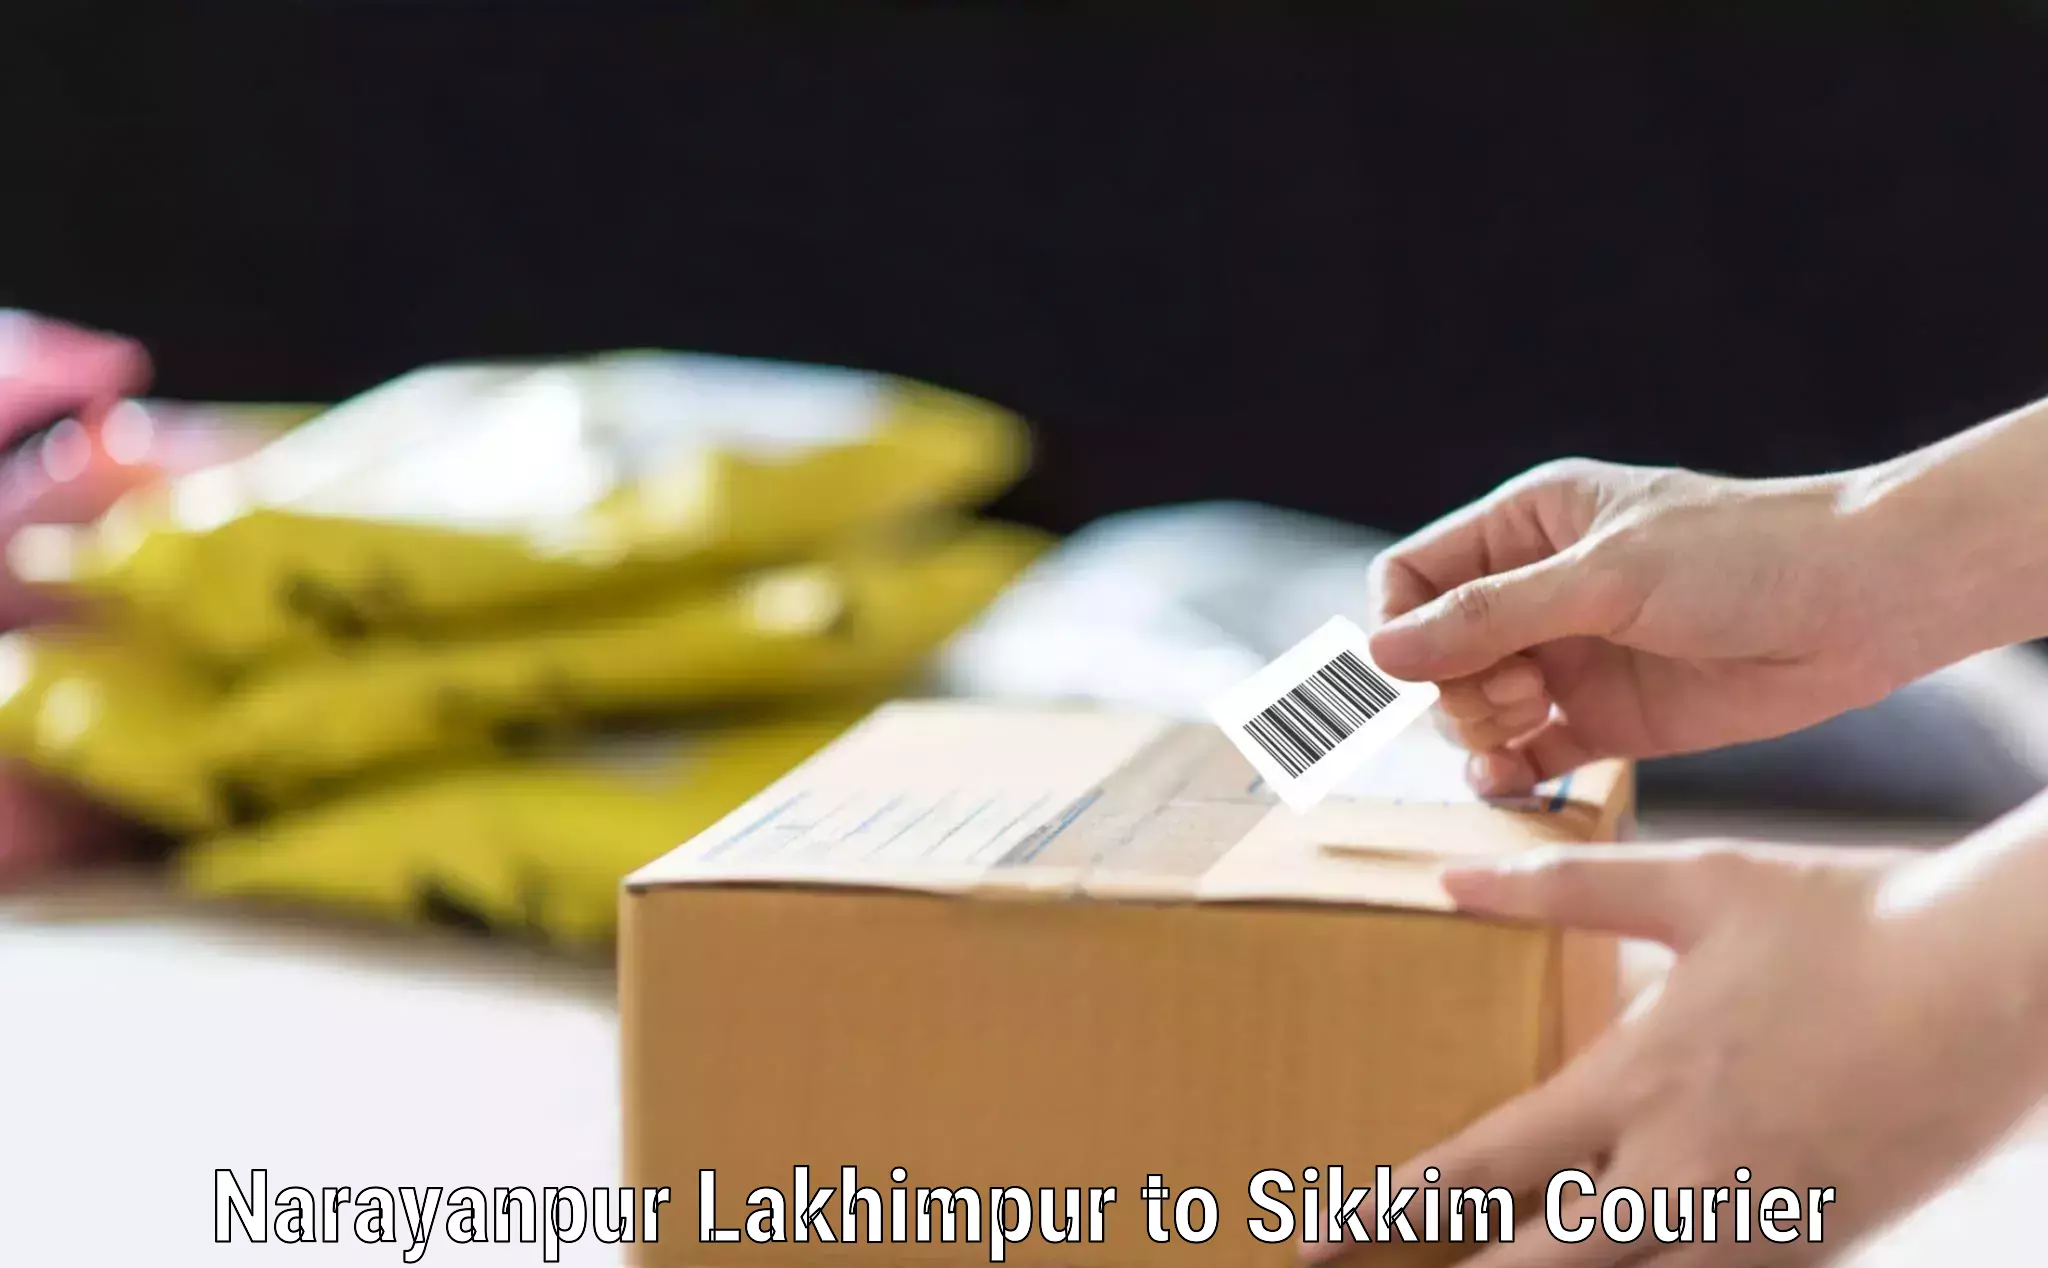 Baggage shipping service Narayanpur Lakhimpur to Geyzing